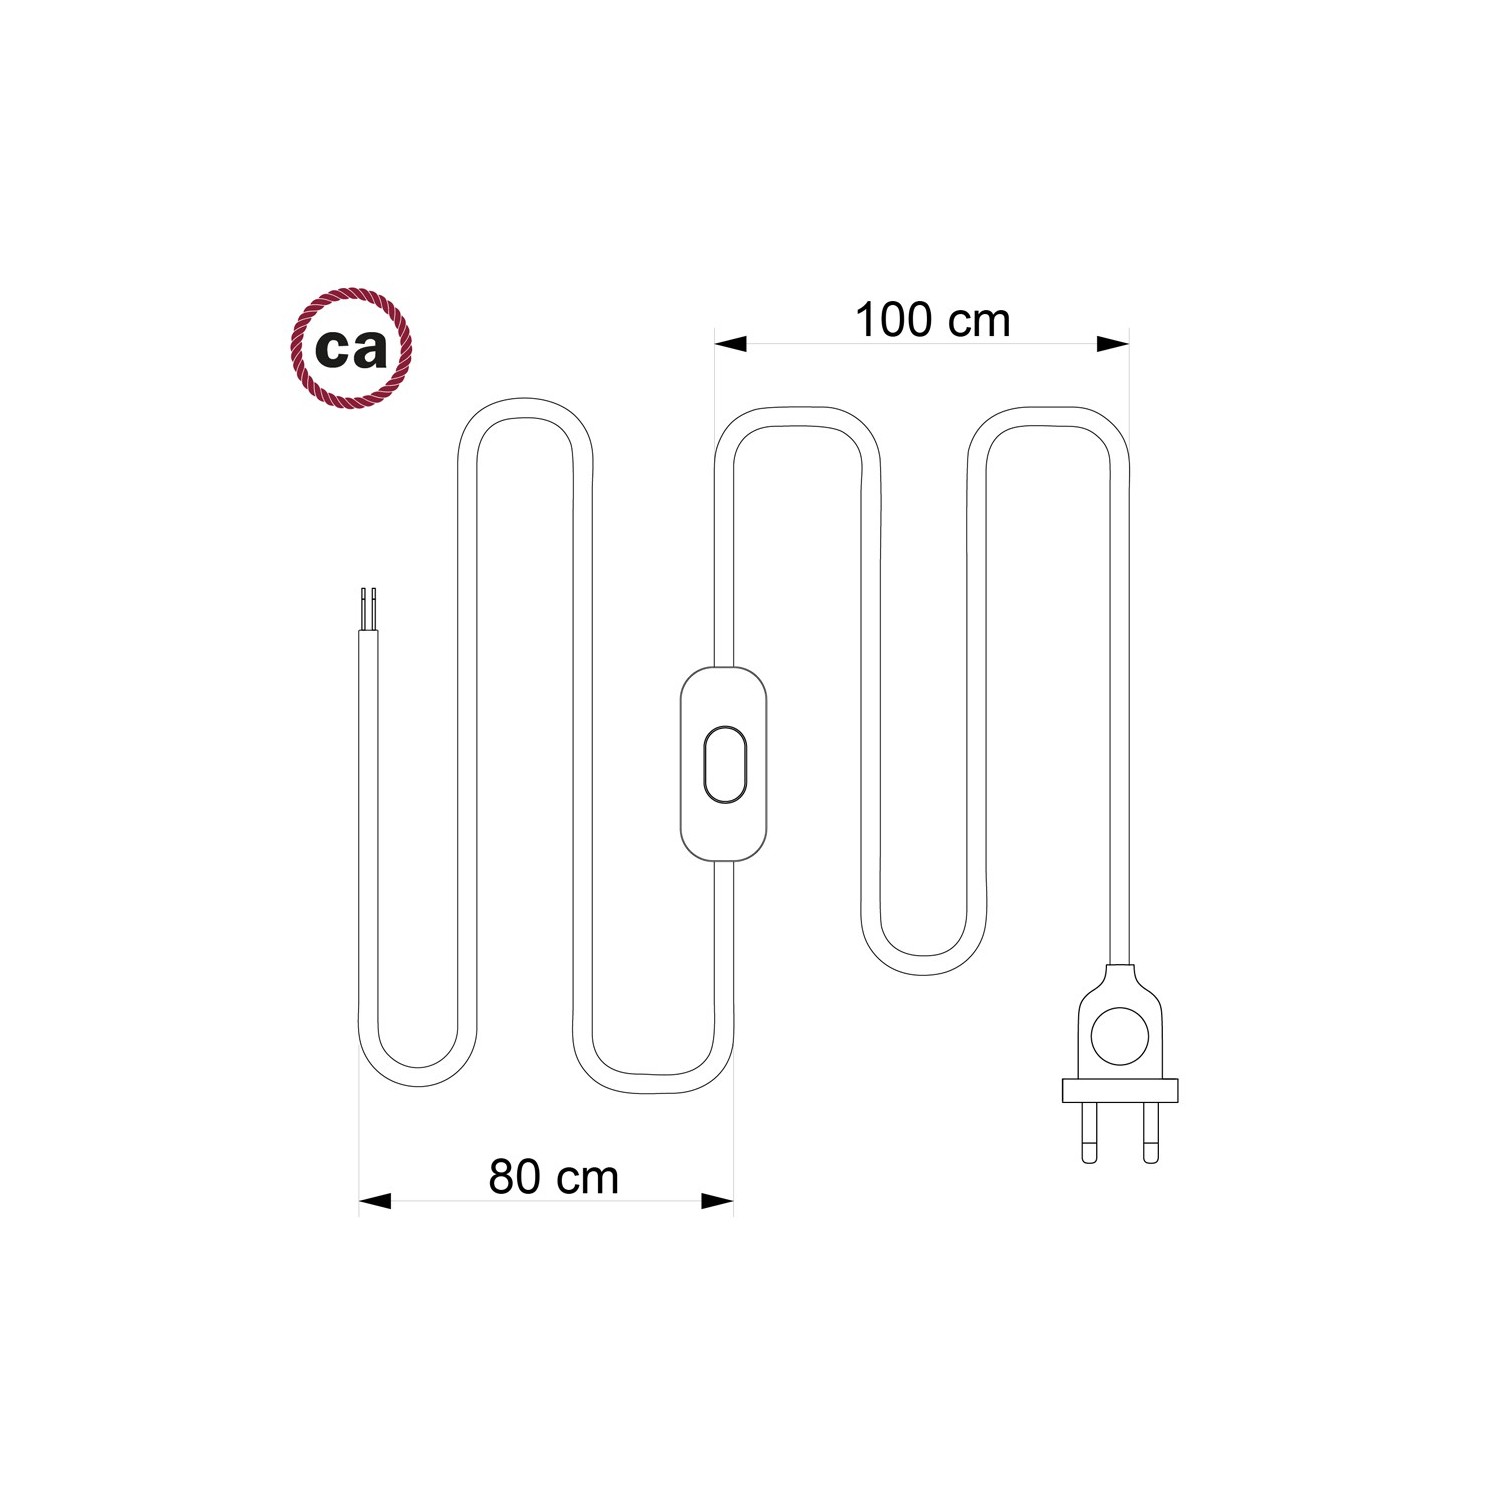 Cordon pour lampe, câble TM06 Effet Soie Vert 1,80 m. Choisissez la couleur de la fiche et de l'interrupteur!